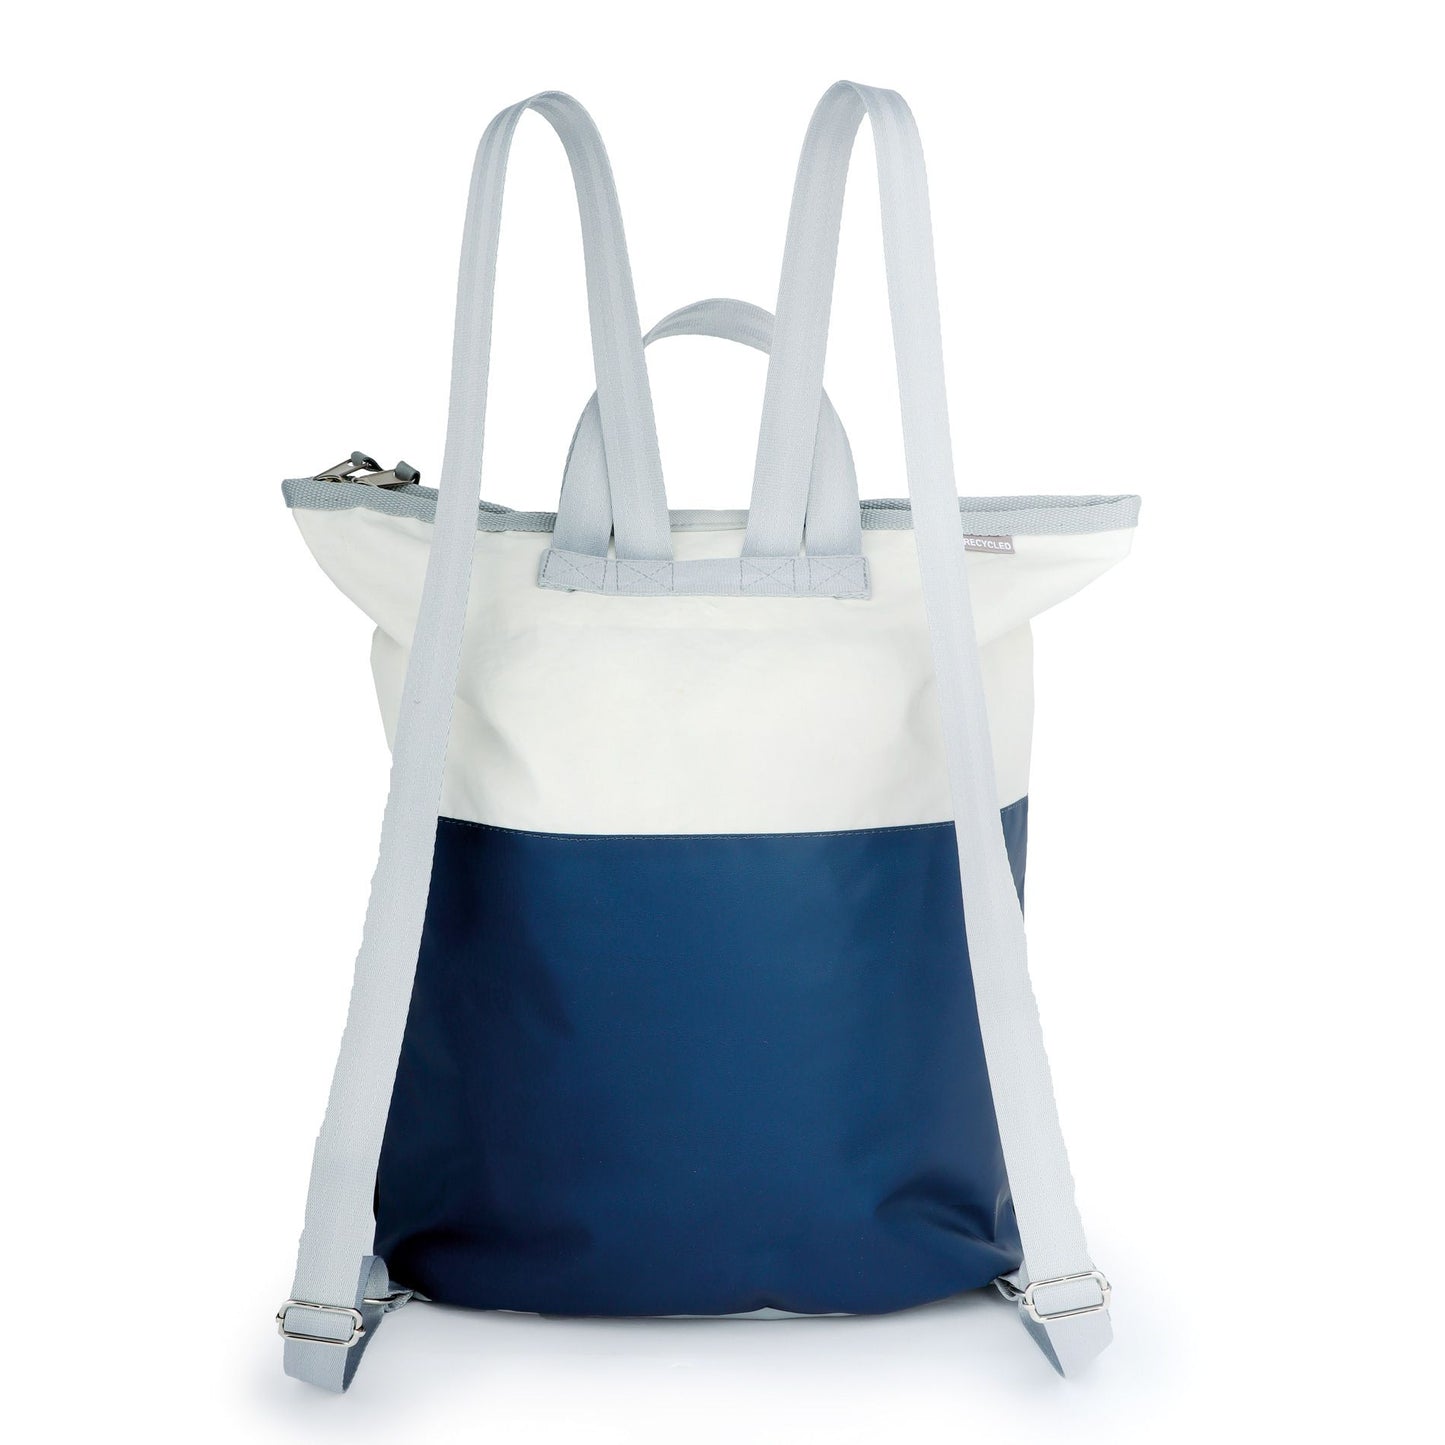 Einkaufstasche Tasche 360 Grad "Ketsch Mini" / Segeltuch weiß blau / Motiv Zufallszahl grau